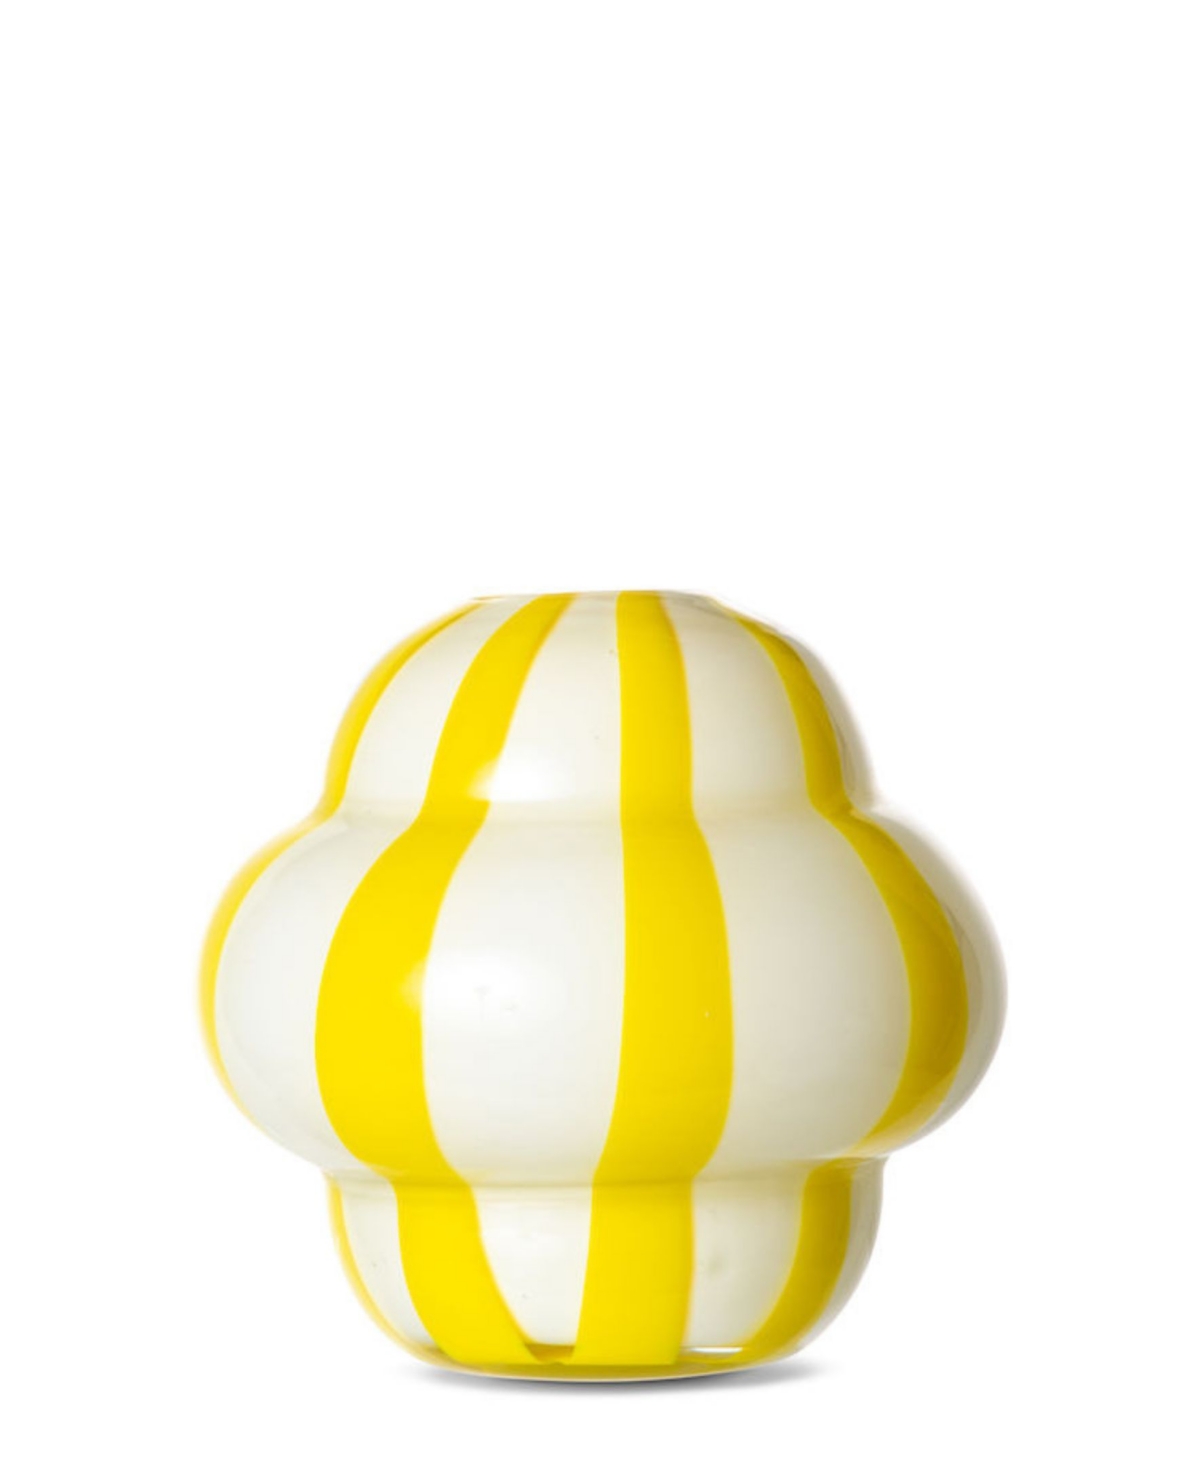 Byon By Widgeteer Curlie Striped Vase In Yellow